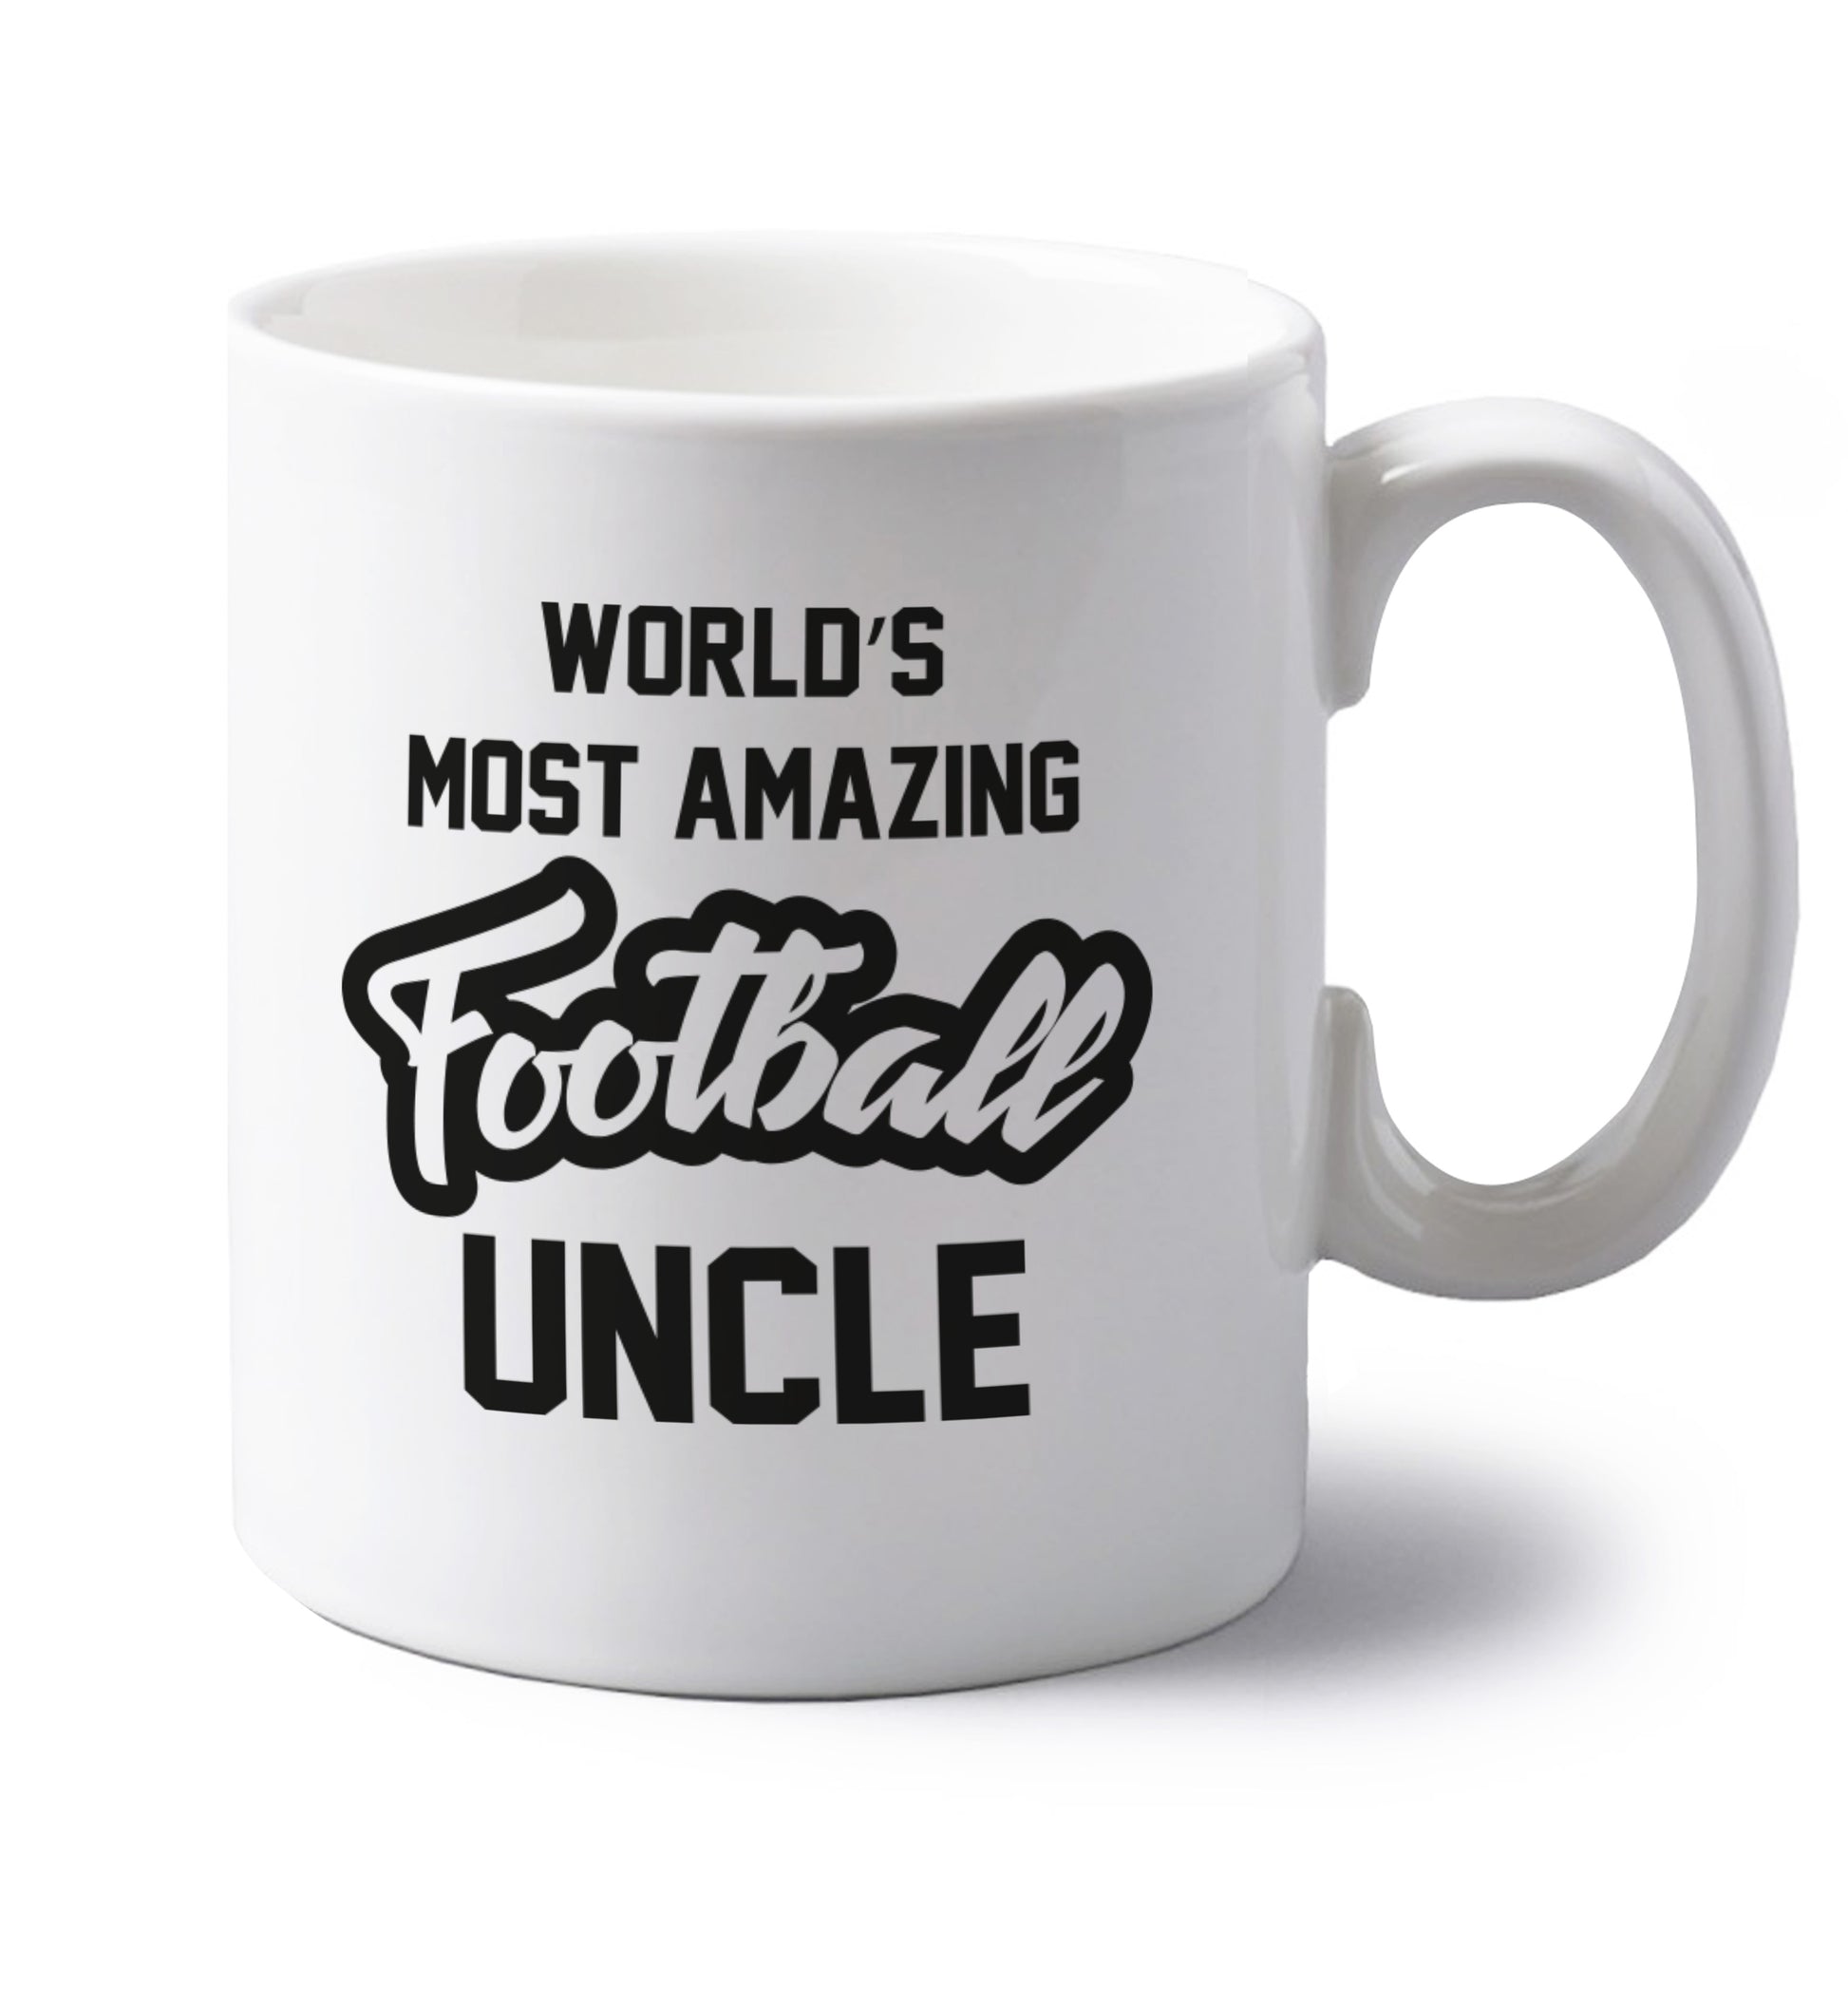 Worlds most amazing football uncle left handed white ceramic mug 